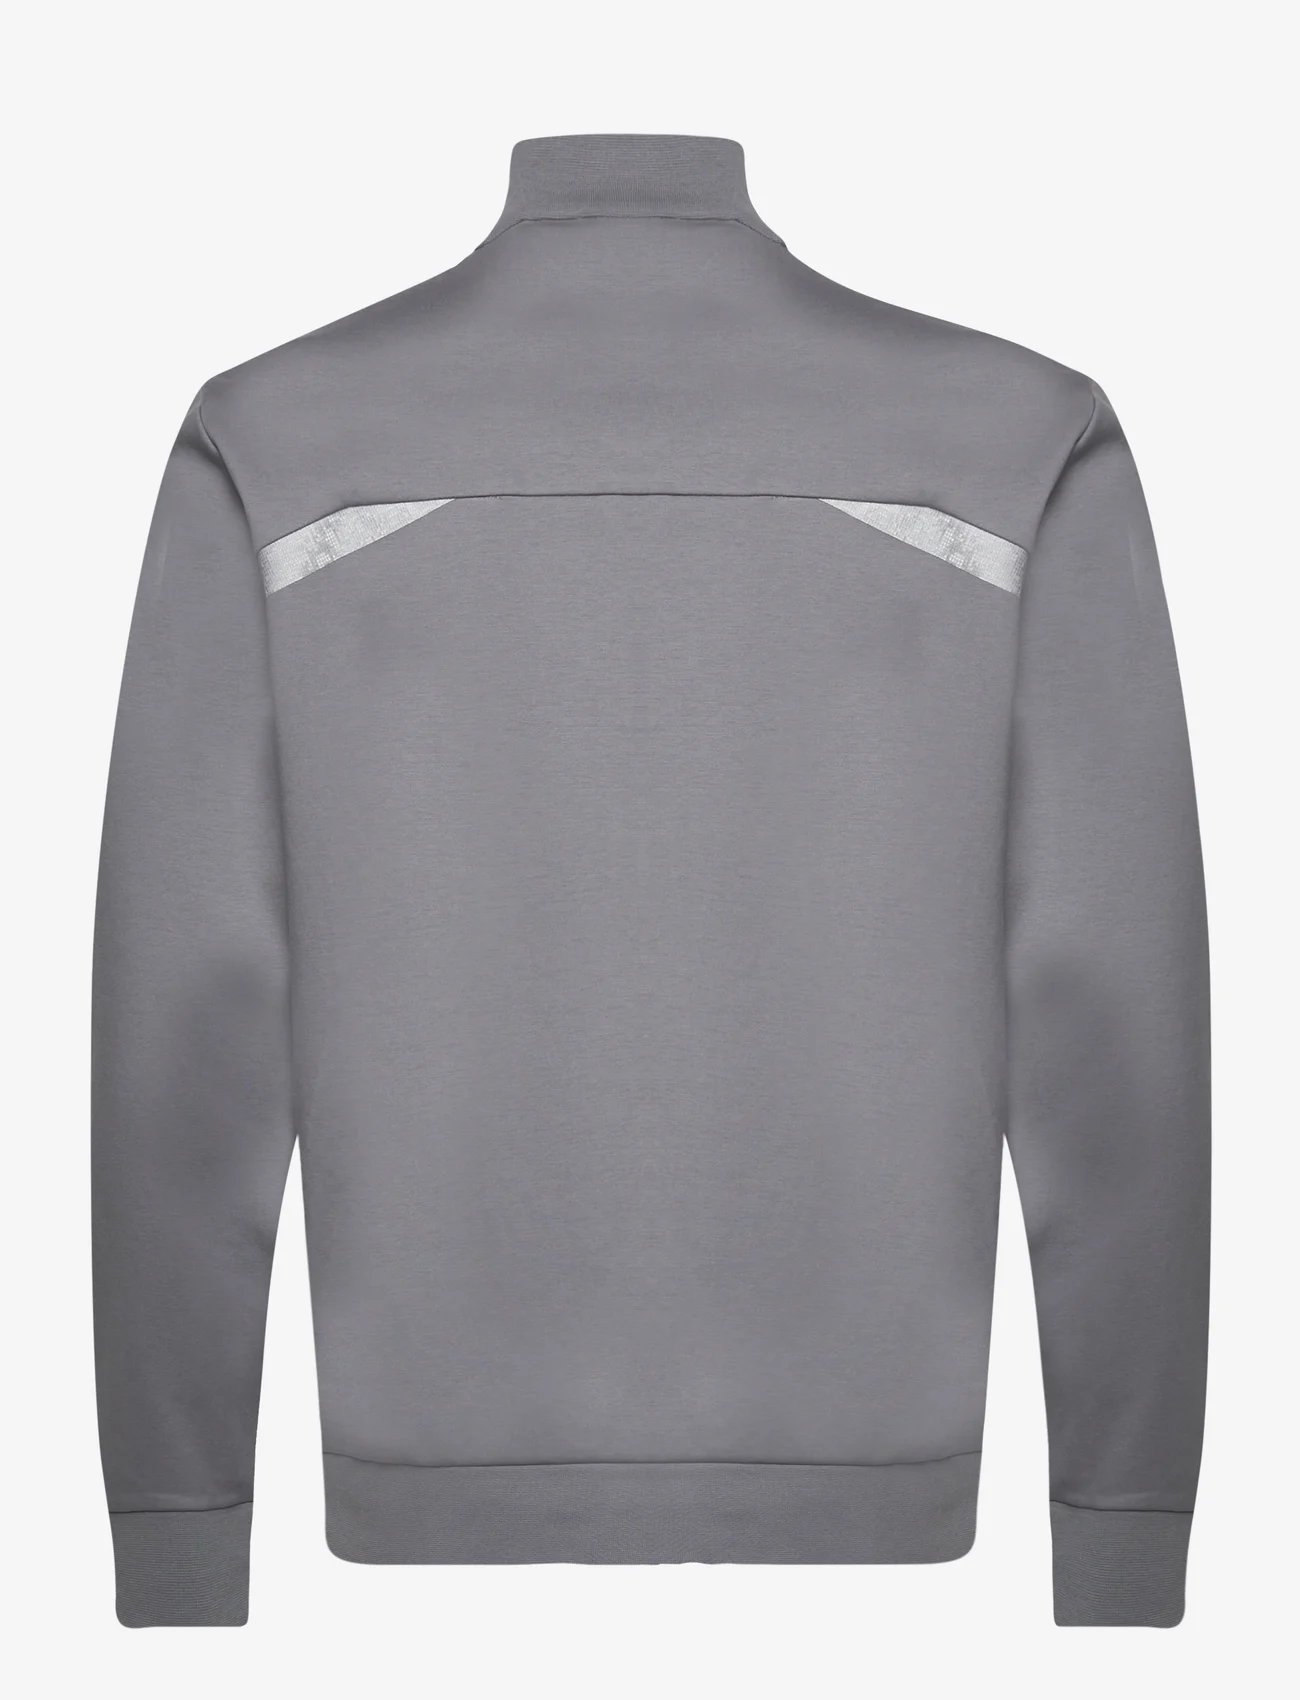 BOSS - Skaz Mirror - sweaters - medium grey - 1